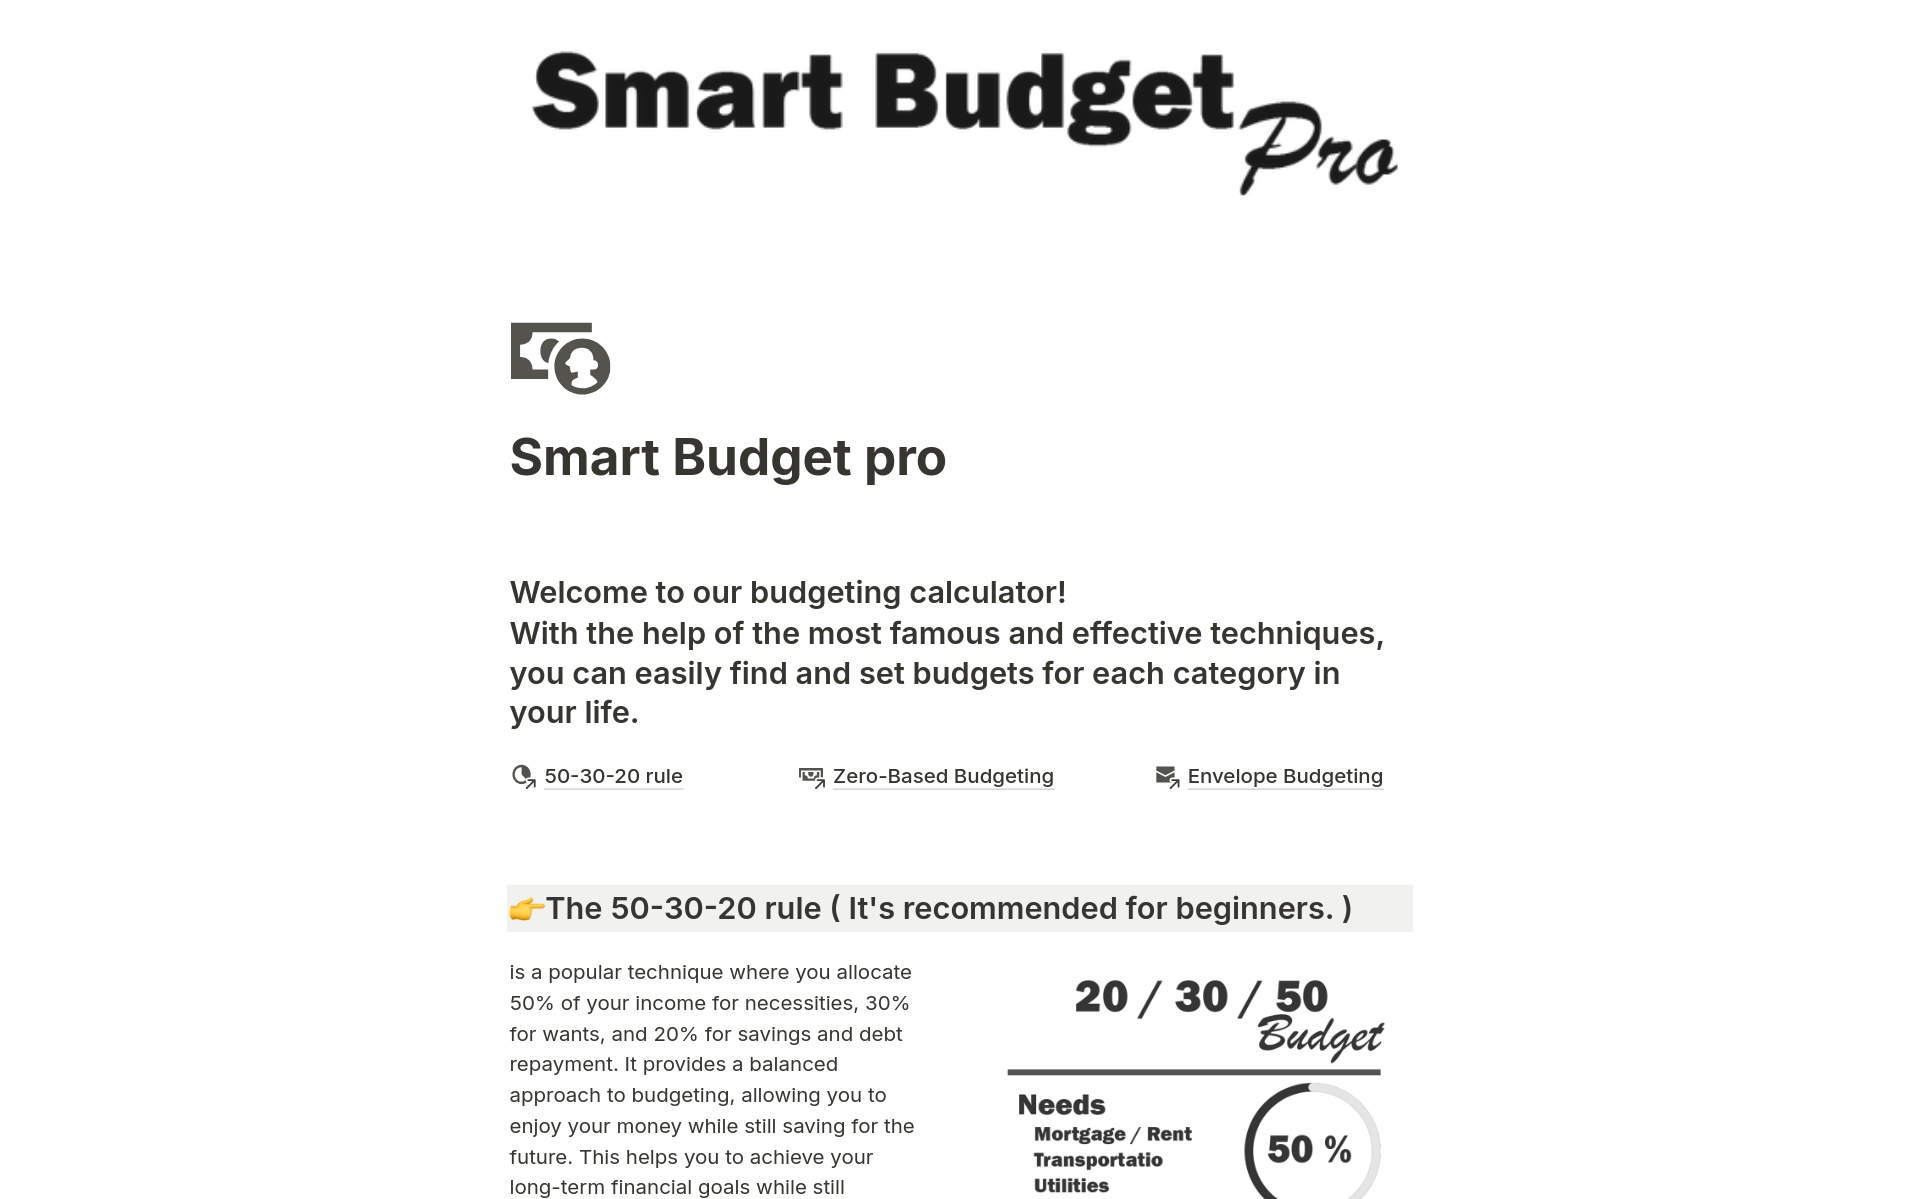 Aperçu du modèle de Smart Budget pro